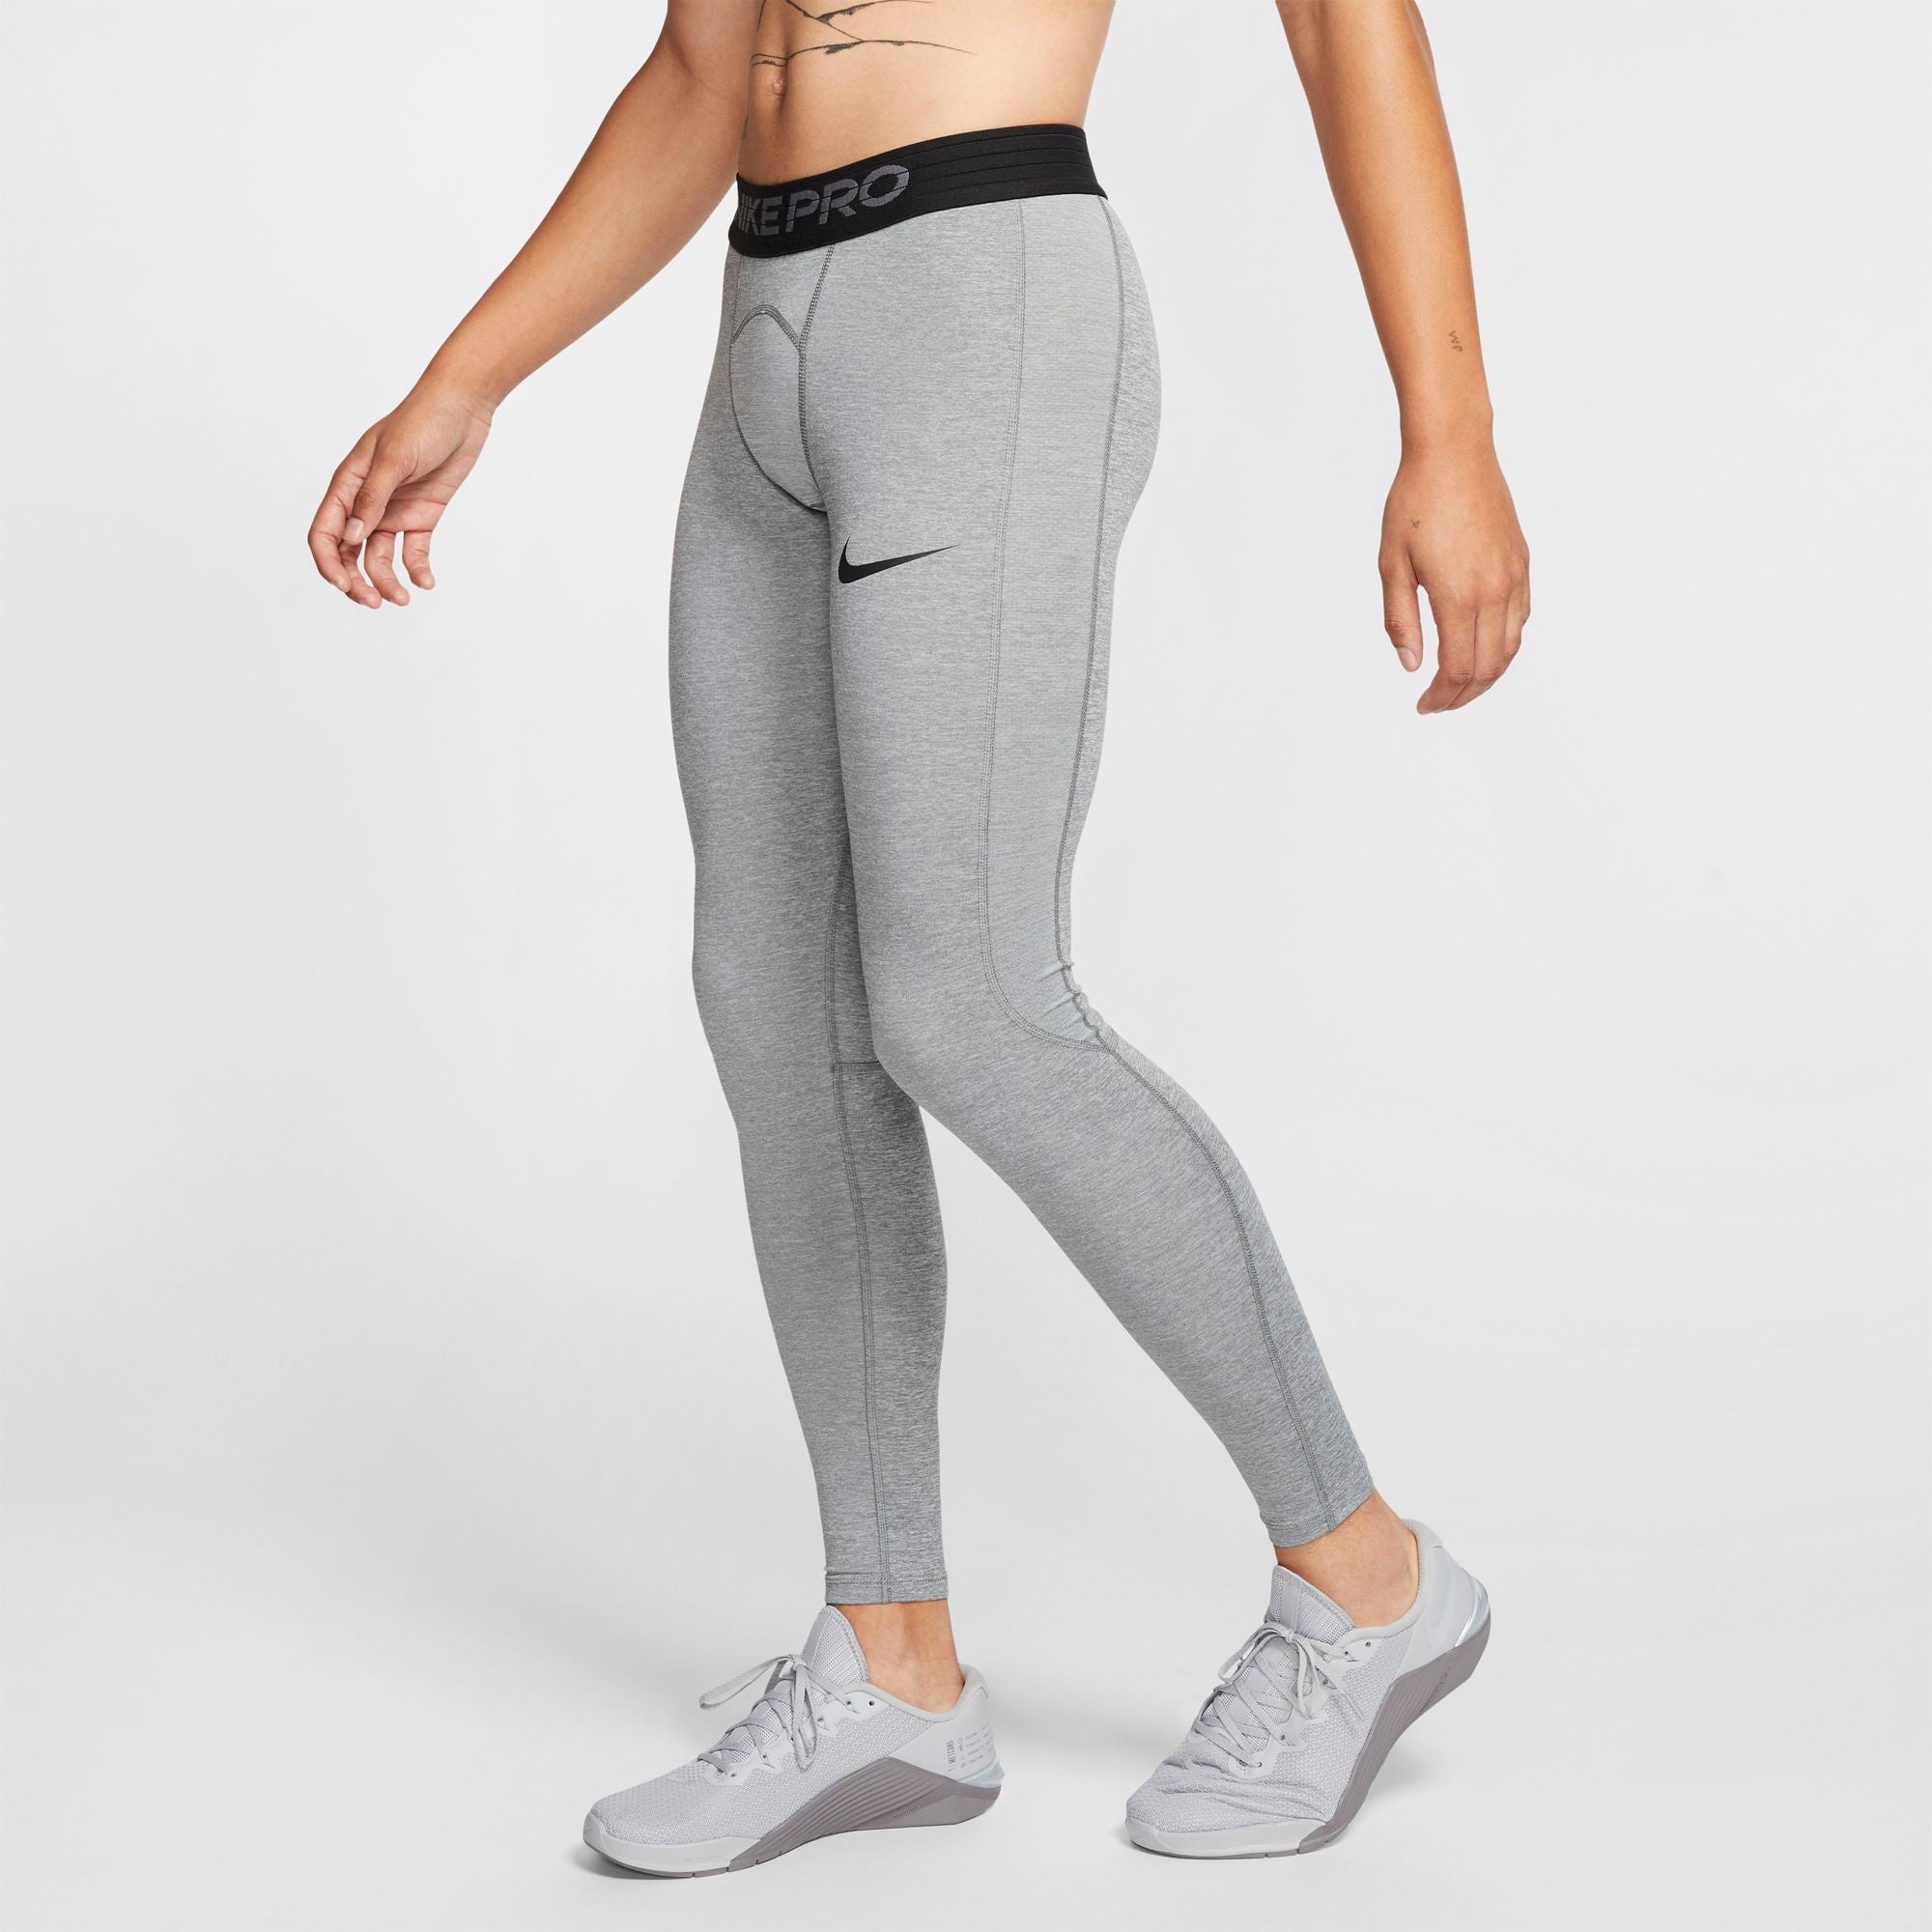 Woman Tight Nike Pro - grey - WORKOUT.EU